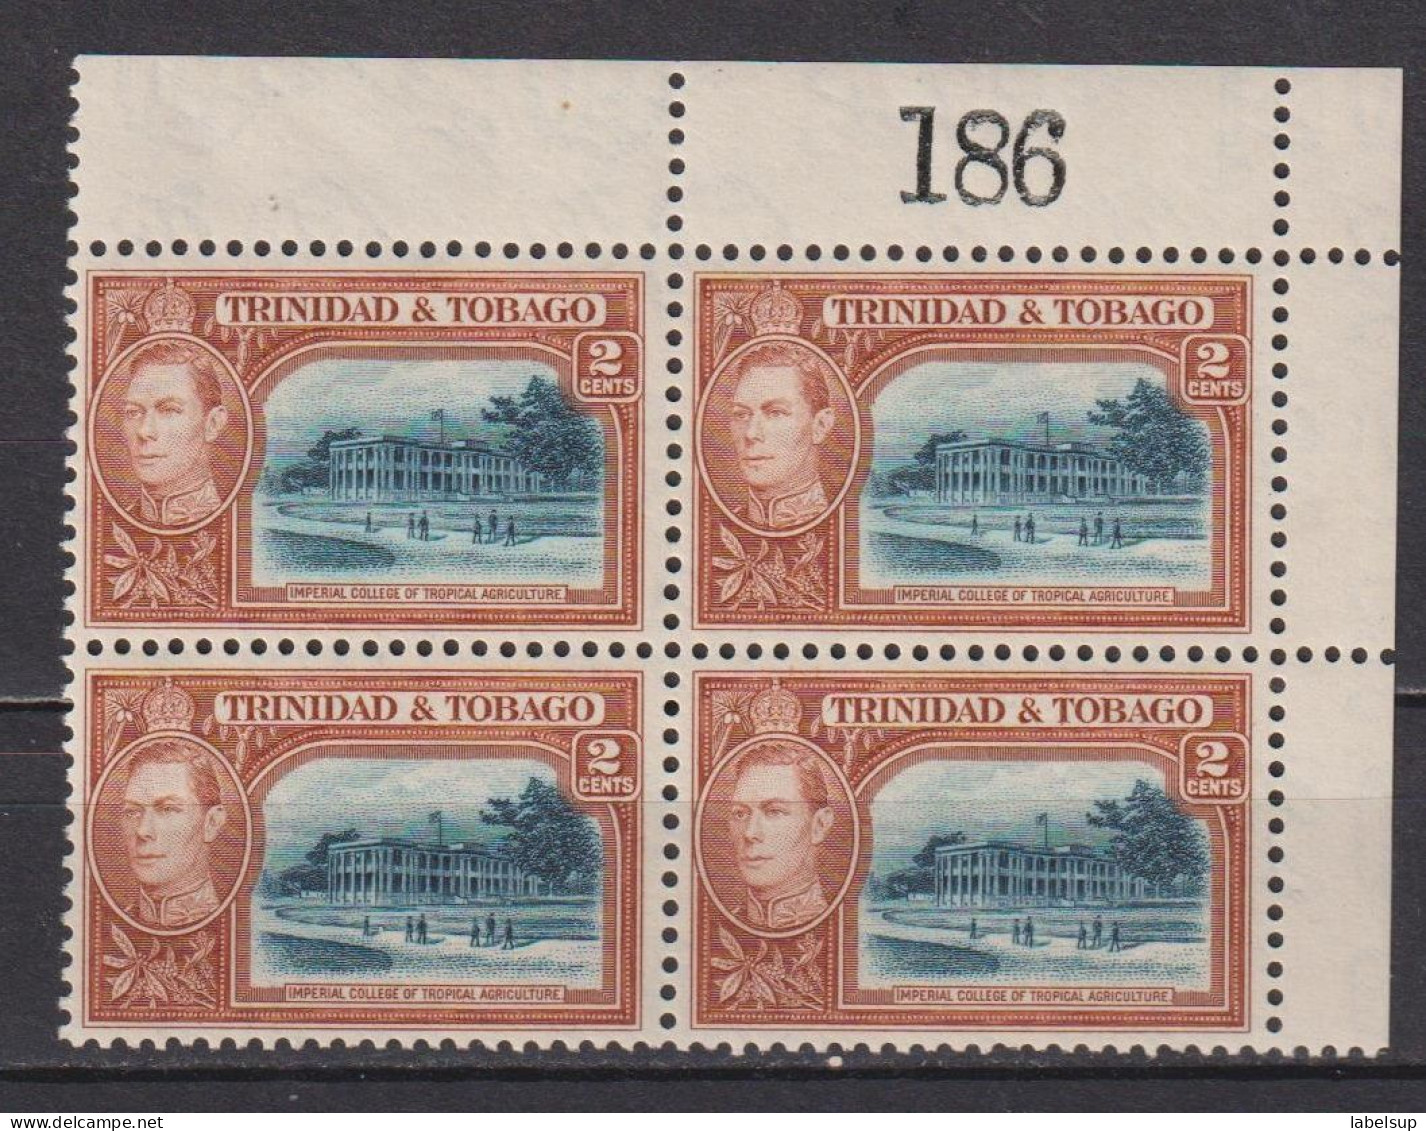 Bloc De 4 Timbres Neufs** De Trinité Et Tobago De 1938  YT 139 132 MNH - Trinité & Tobago (...-1961)